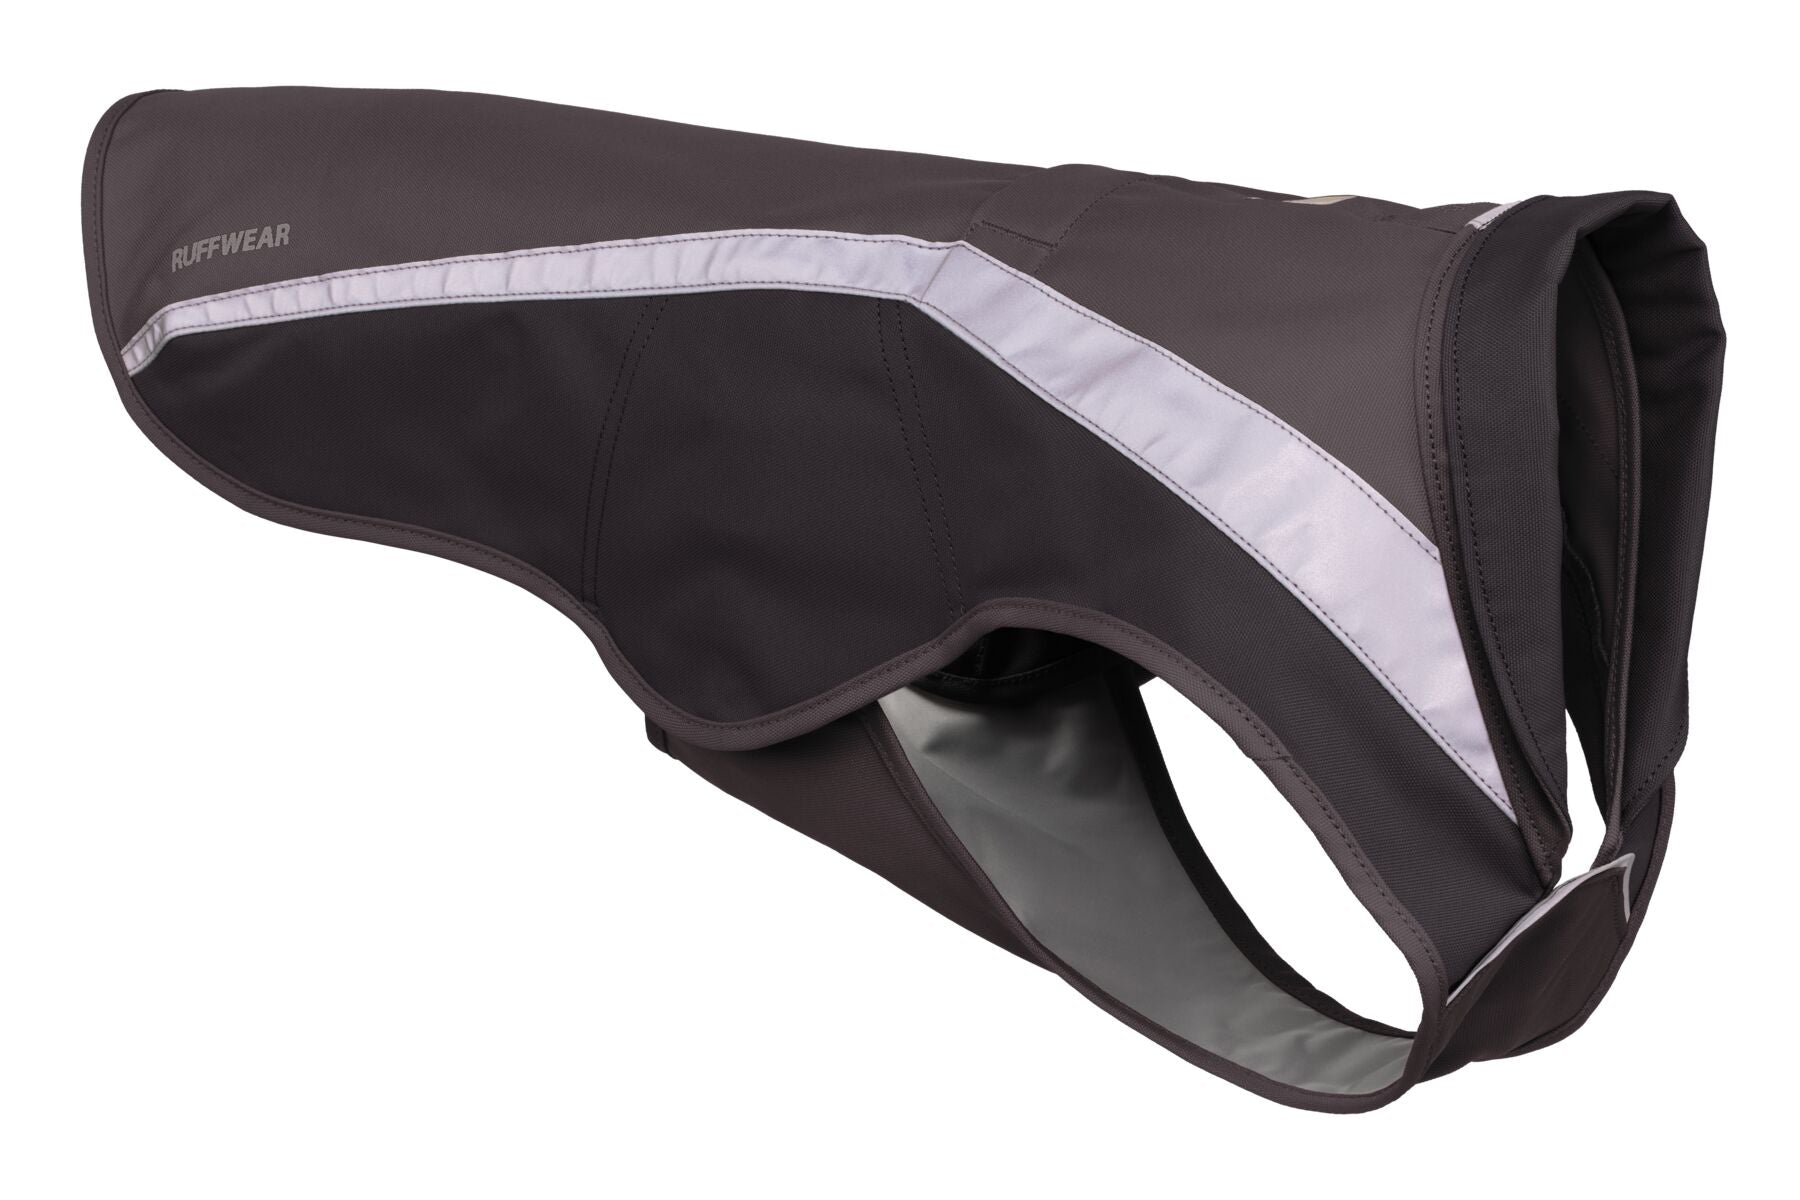 Lumenglow® Chaleco de Seguridad Reflejante para Perros- Gris (Granite Gray)- Ruffwear